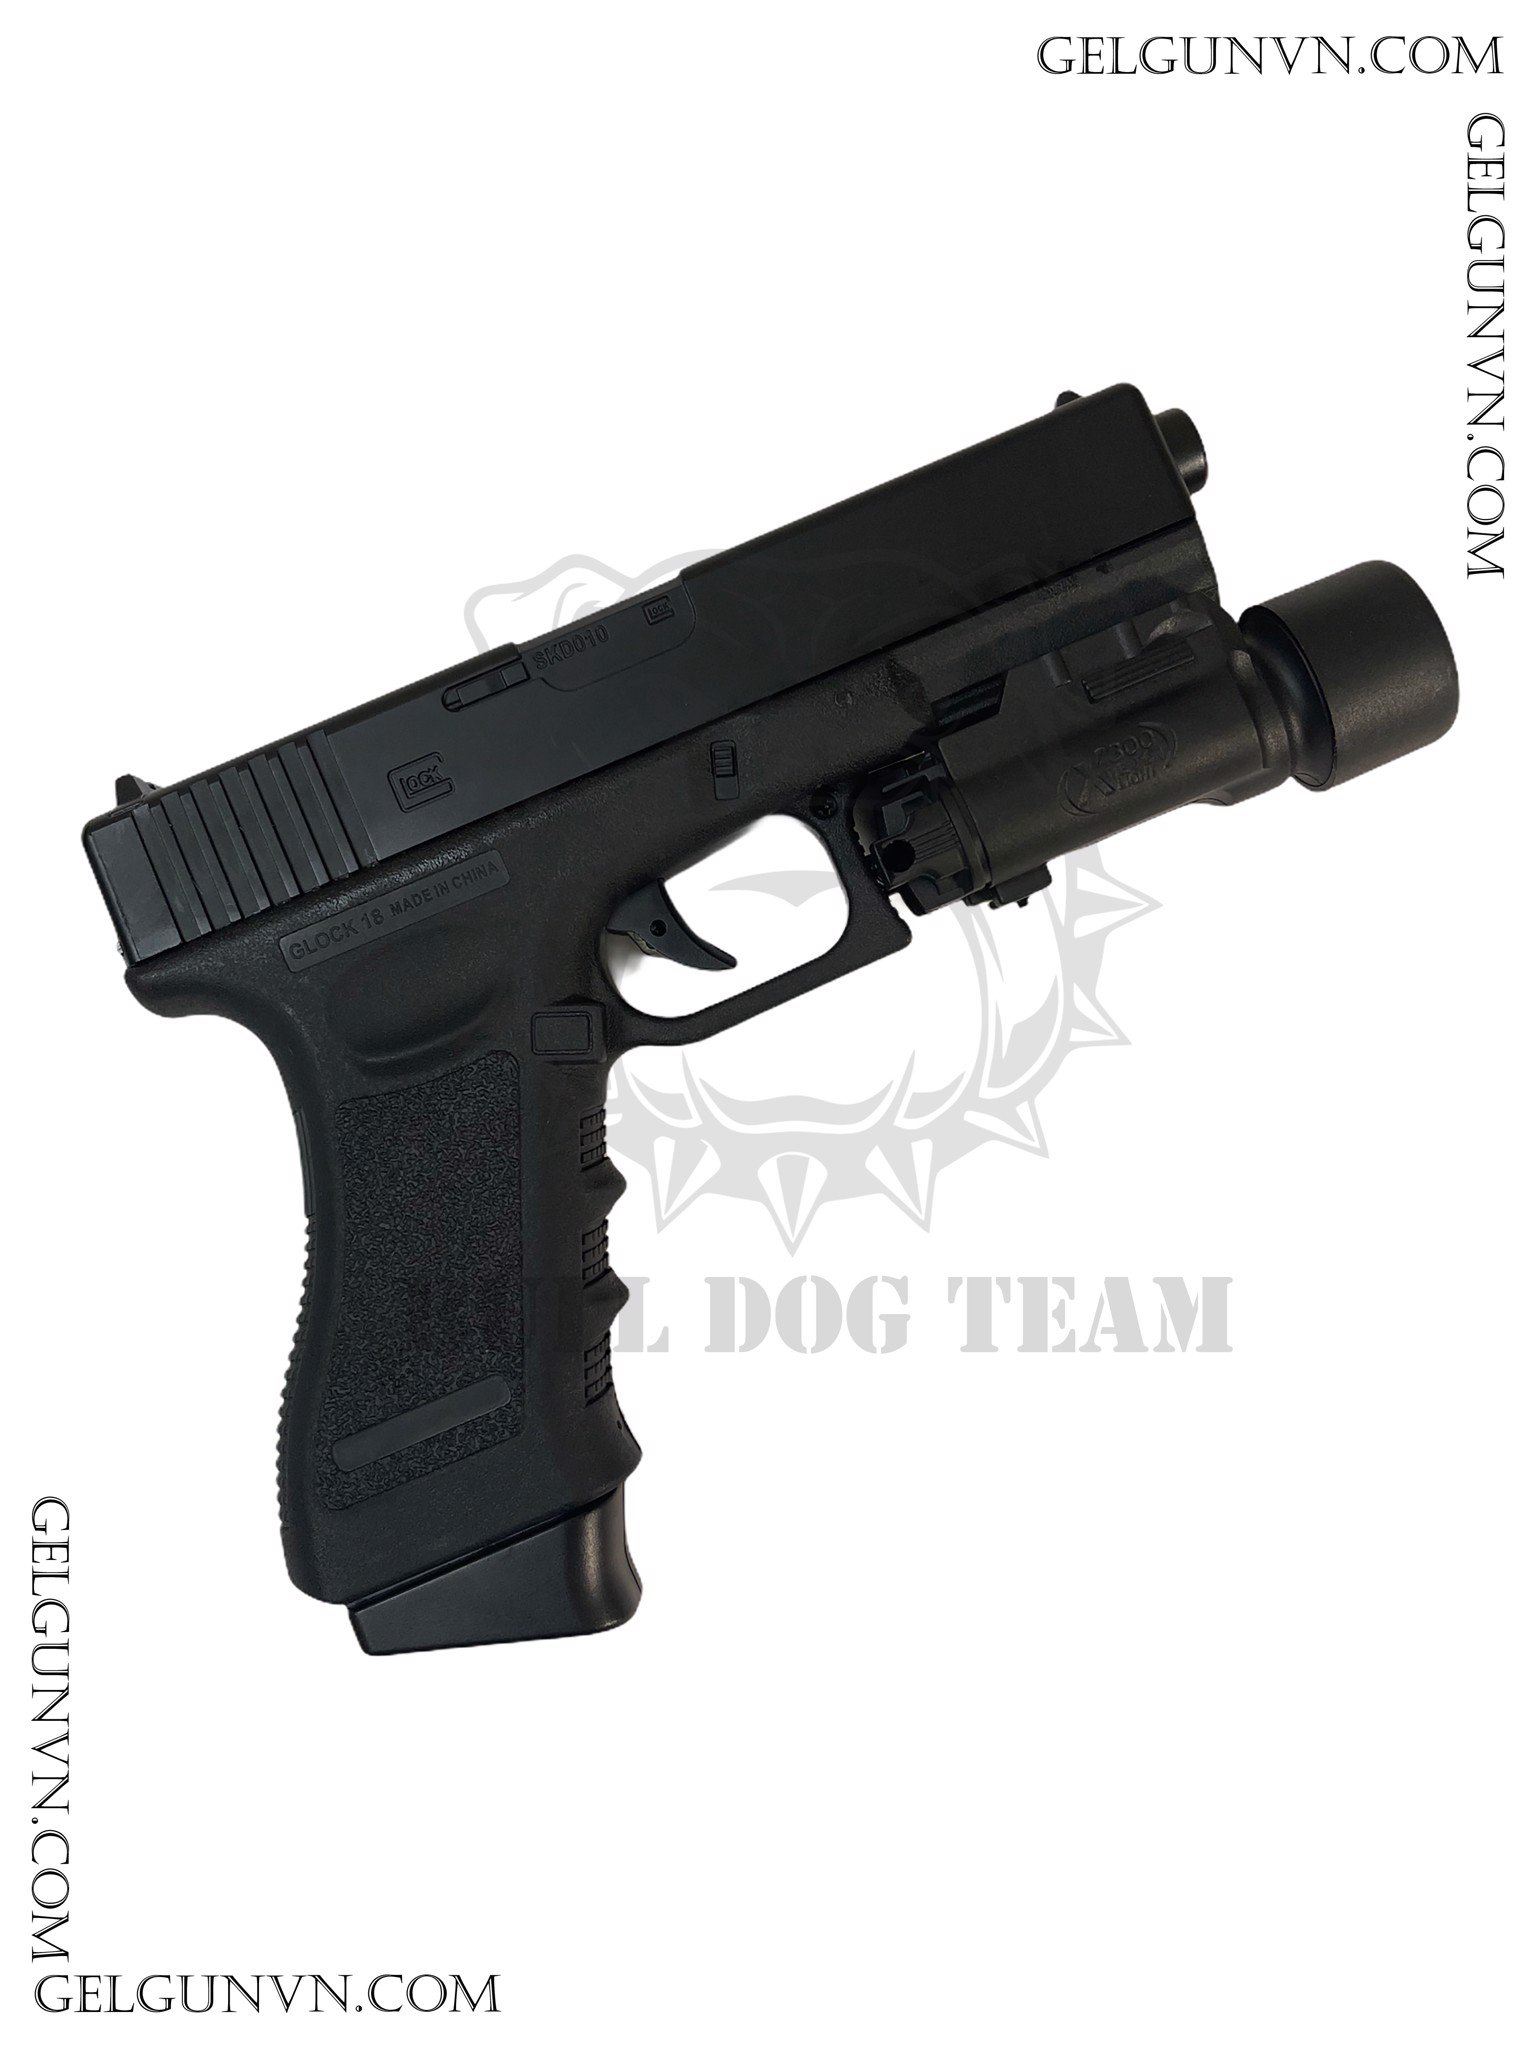  Súng Đạn Thạch Glock 18S - Cải Tiến, Đẹp Hơn , Khỏe hơn - Hàng Có Sẵn 